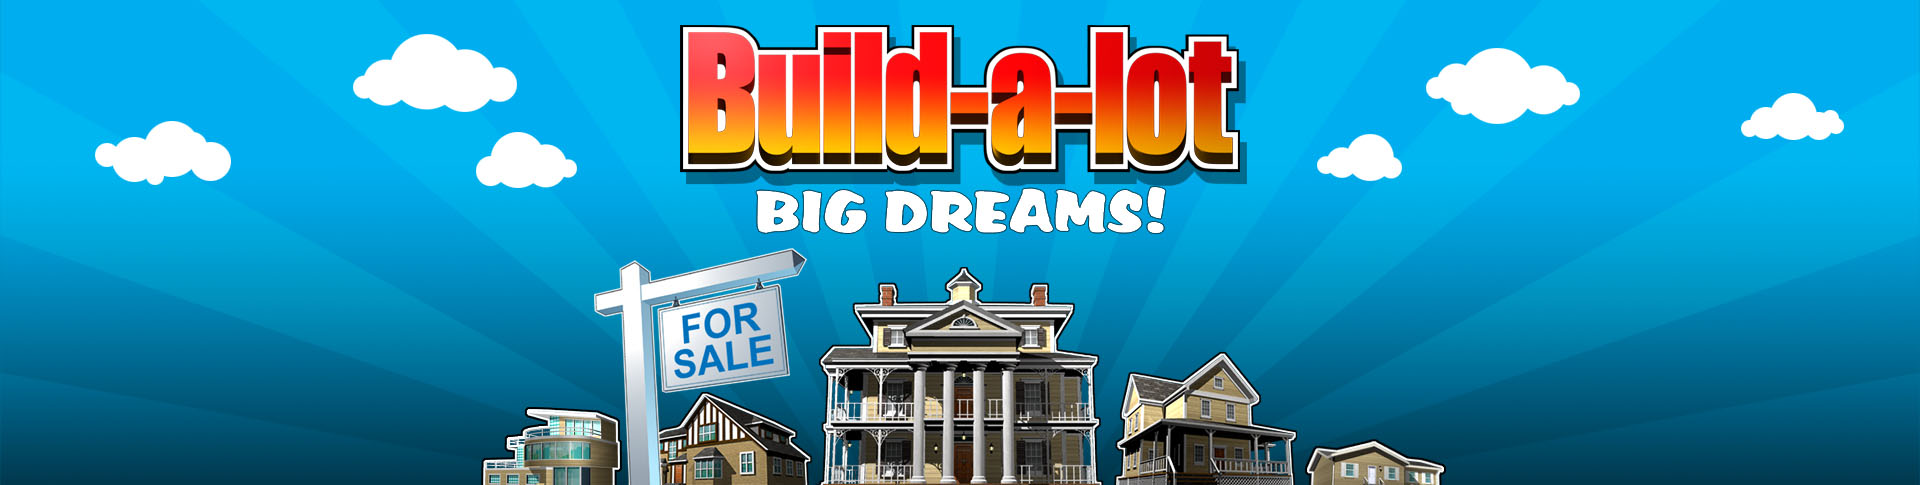 Build-a-lot Big Dreams